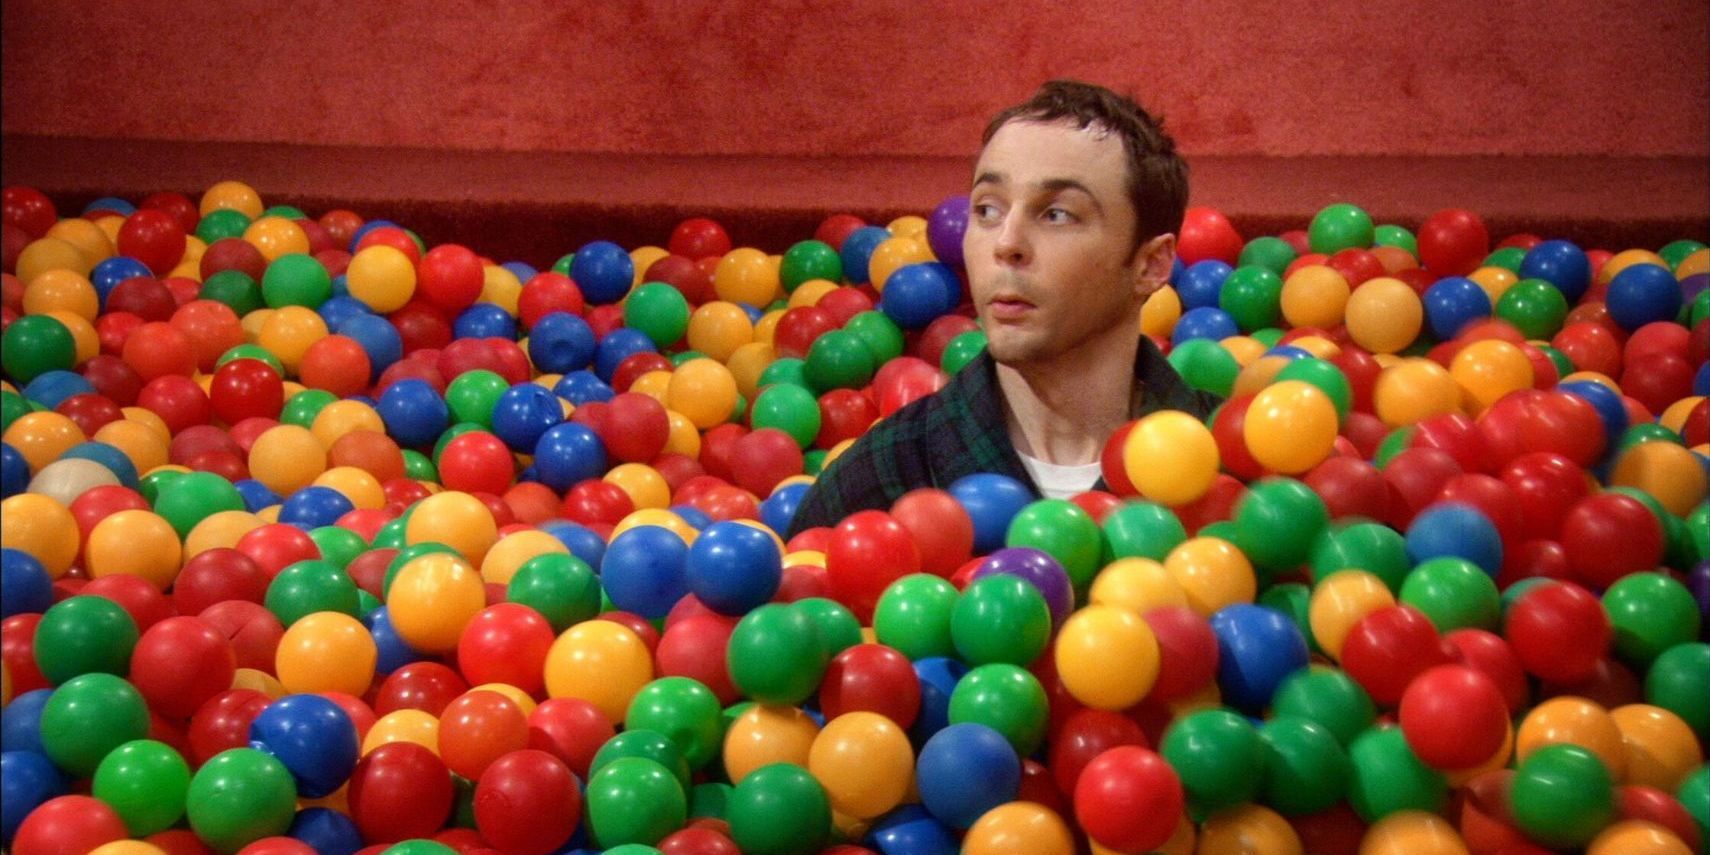 Sheldon inside the ball pit on TBBT